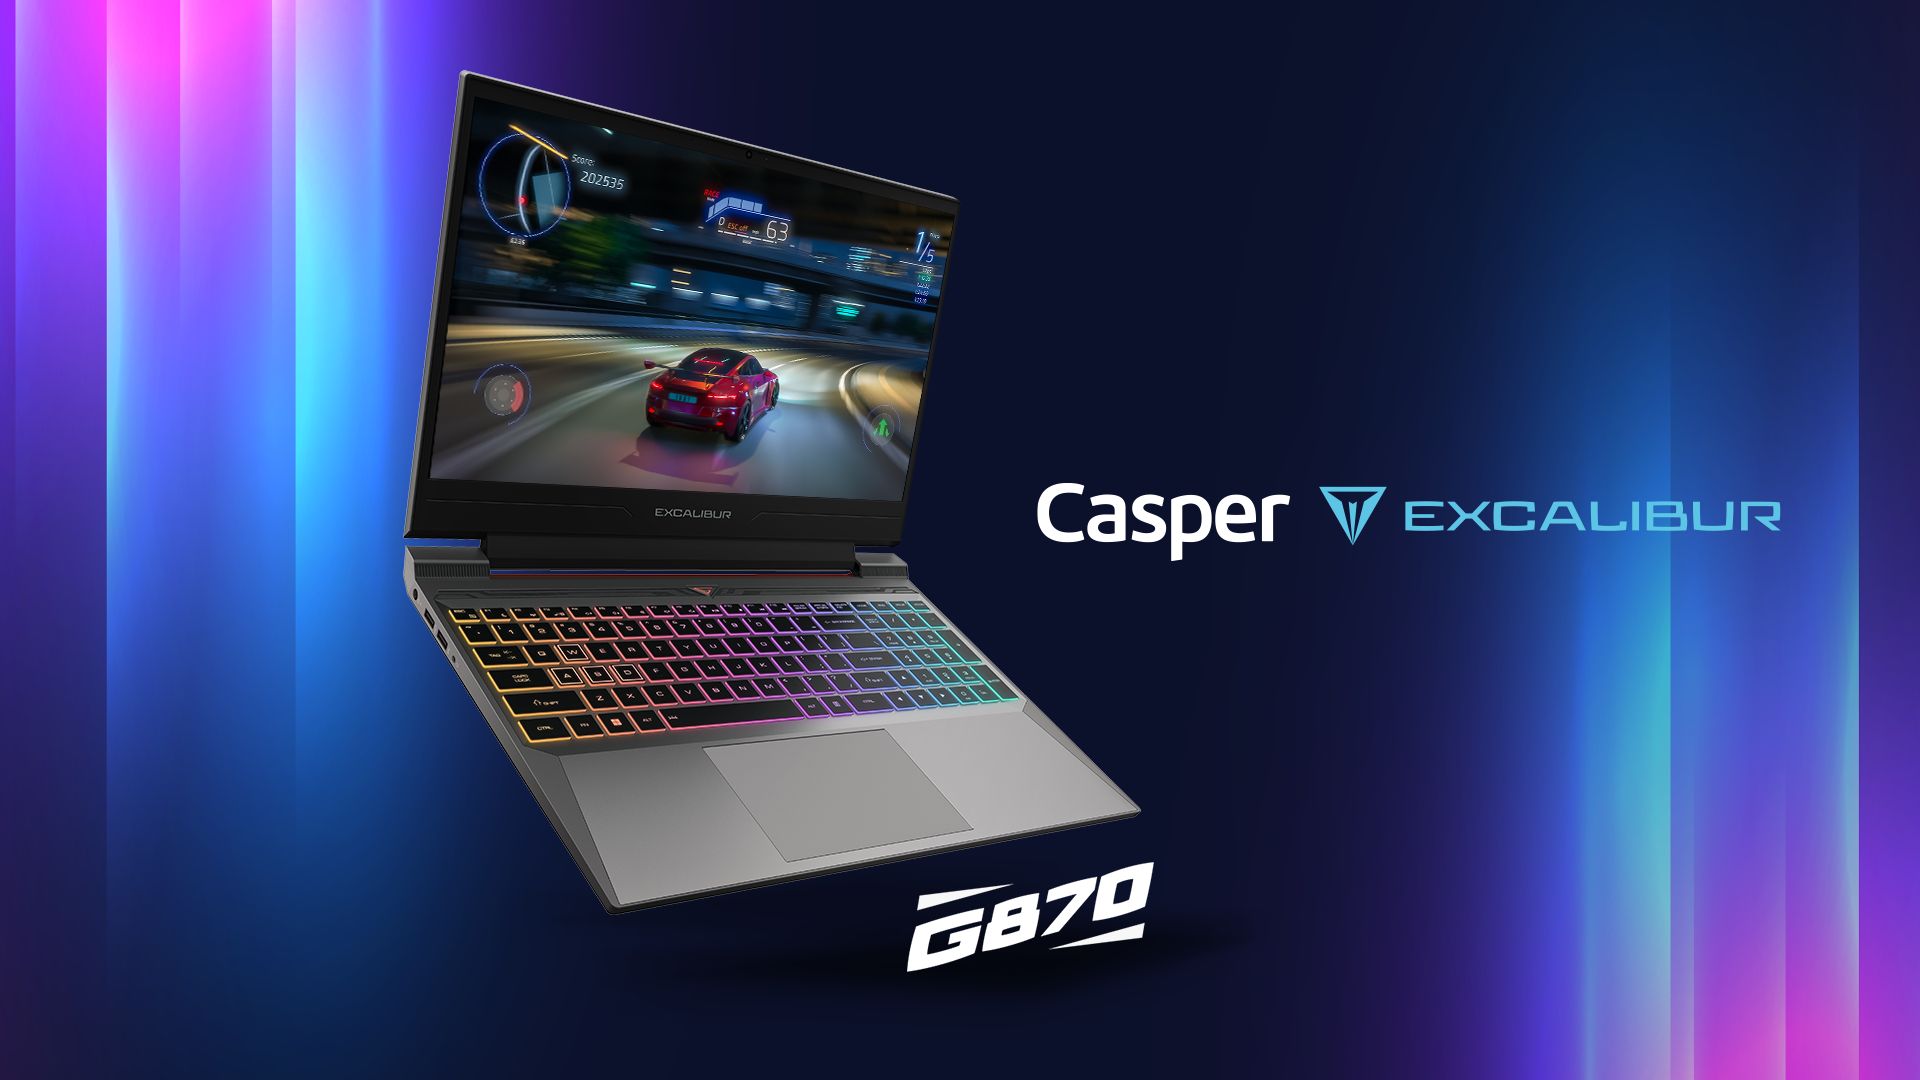 Casper Excalibur G870: Özellikleri, fiyatı ve çıkış tarihi